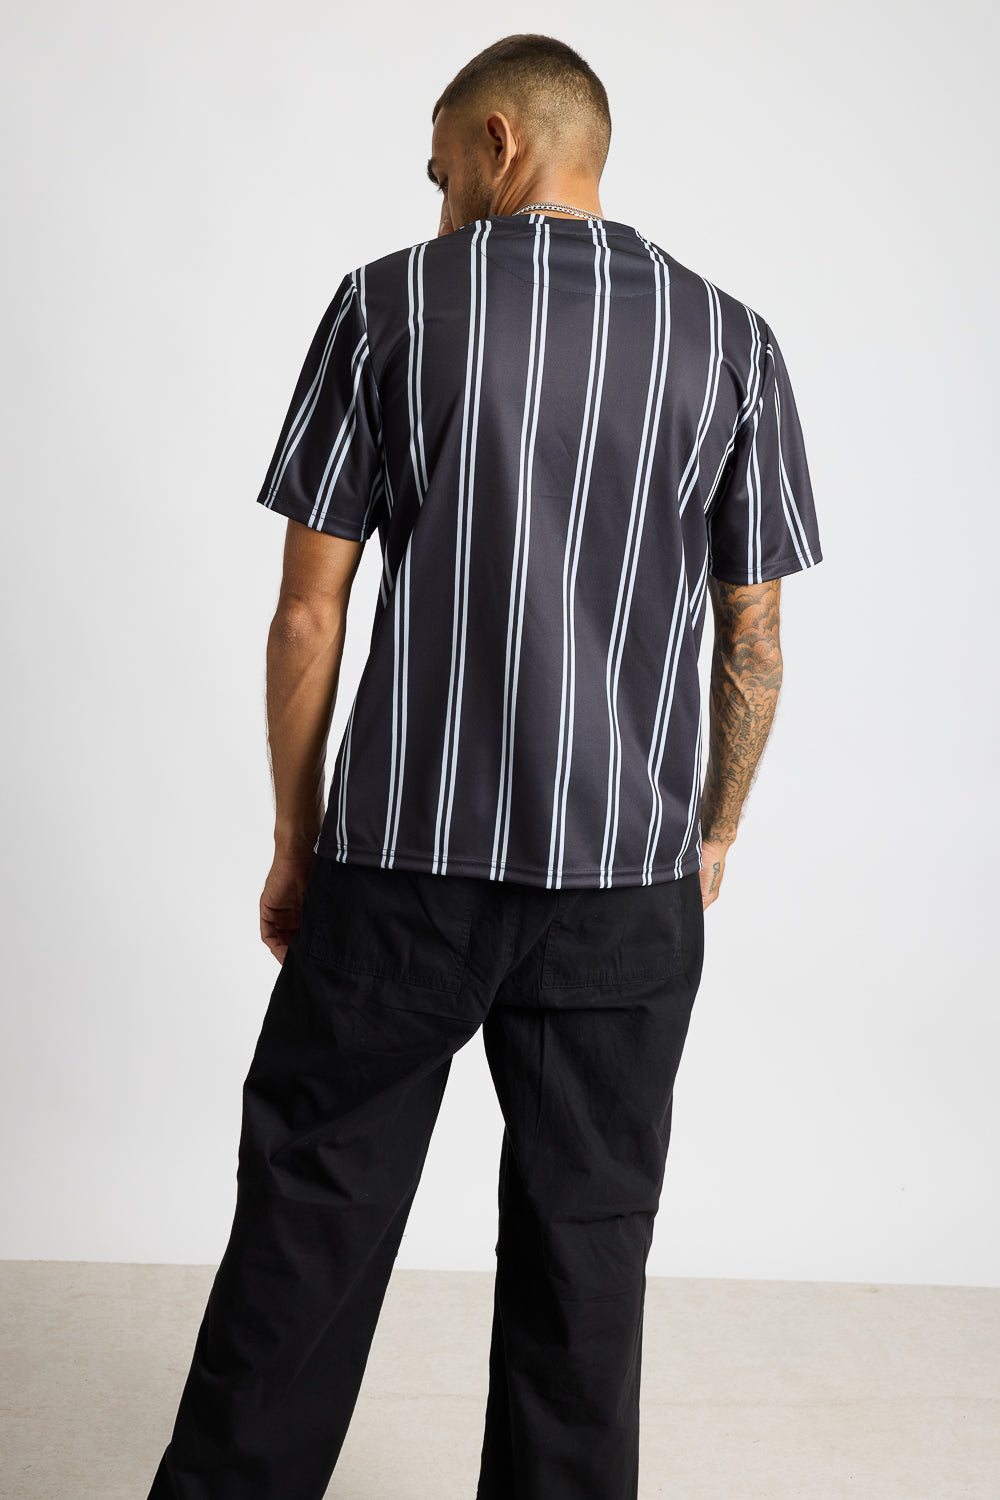 AOP Men's T-shirt - Black/White Stripes